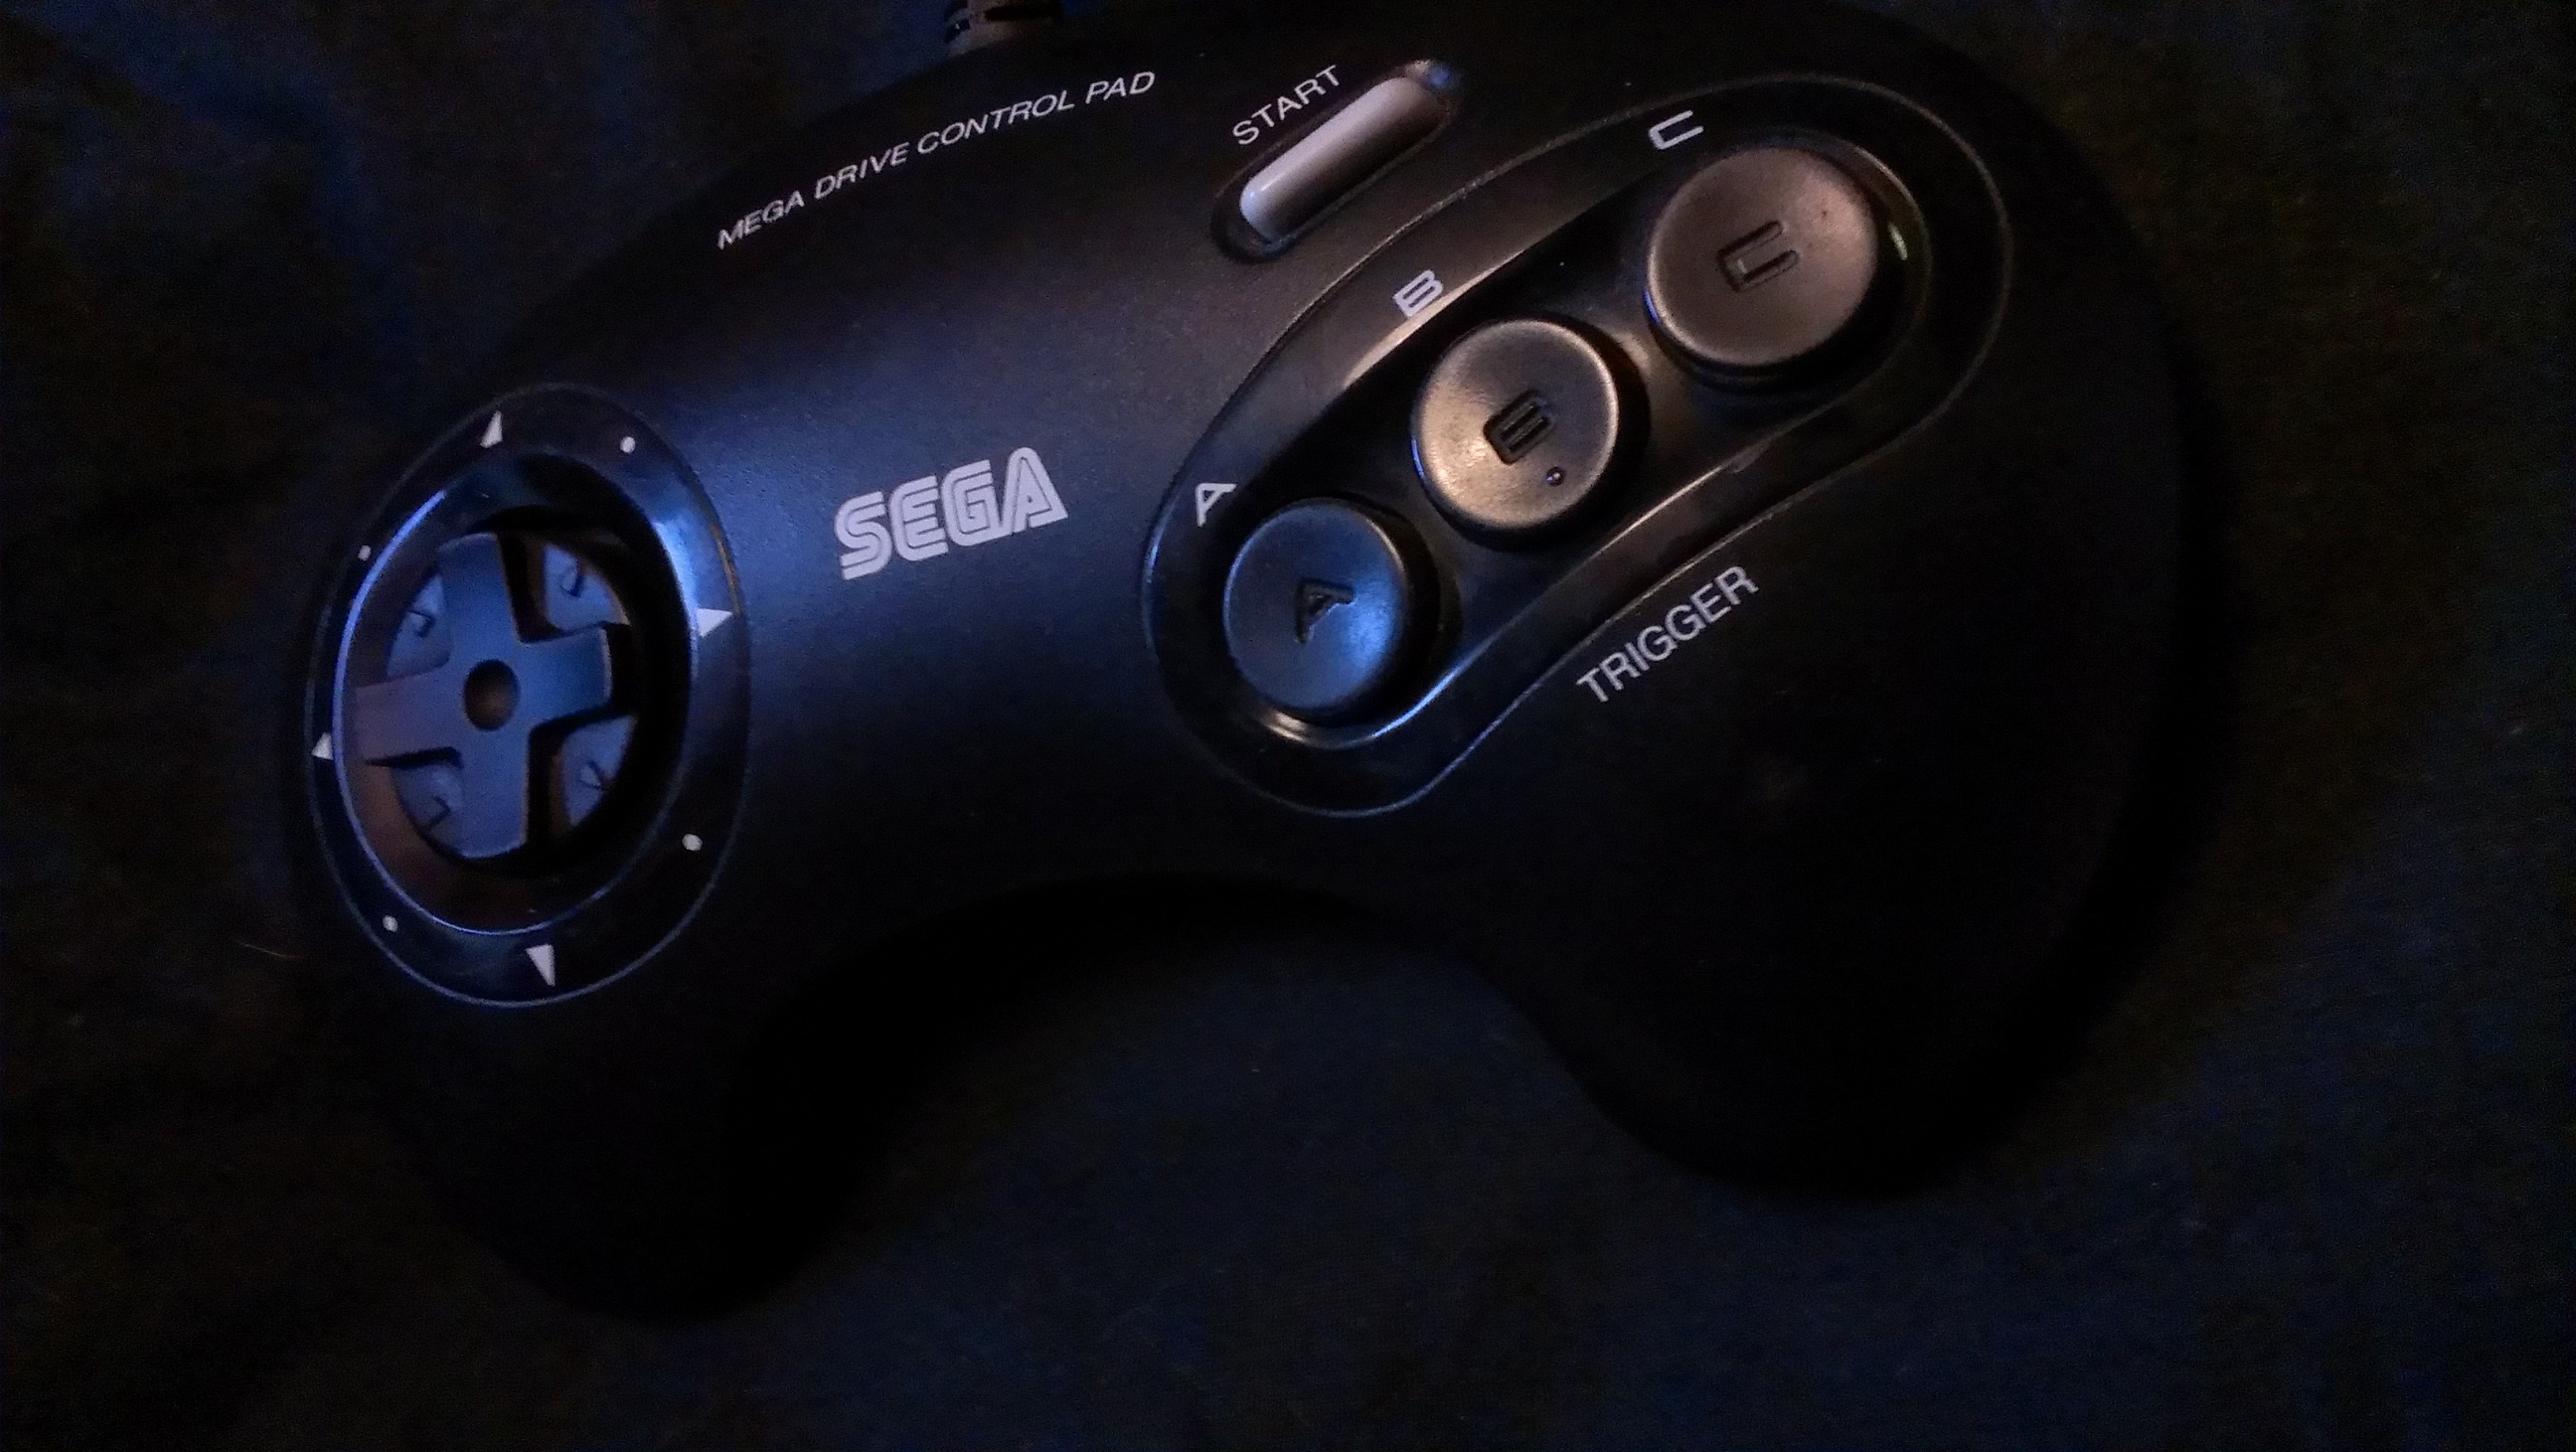 Sega Genesis Controller Wallpaper Sega genesis / megadrive